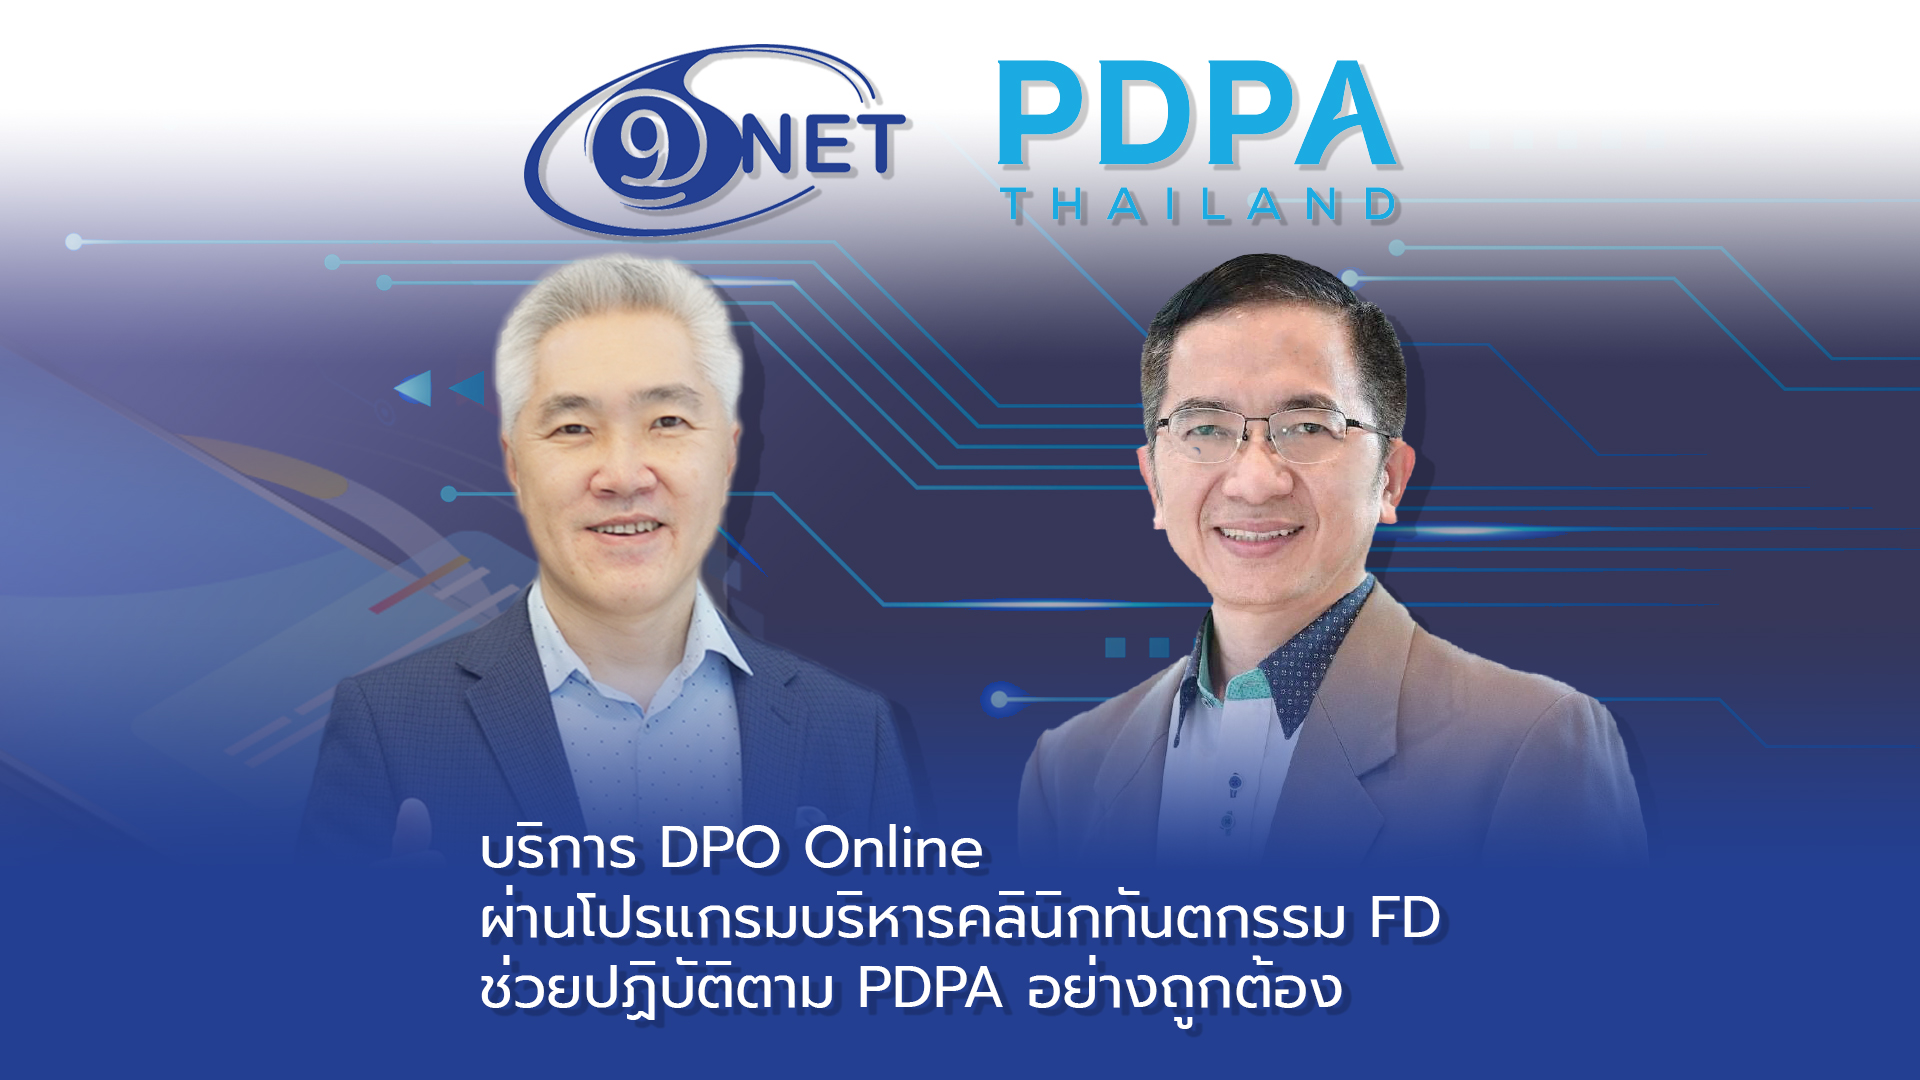 ประกาศความร่วมมือครั้งสำคัญ 9net และ PDPA Thailand